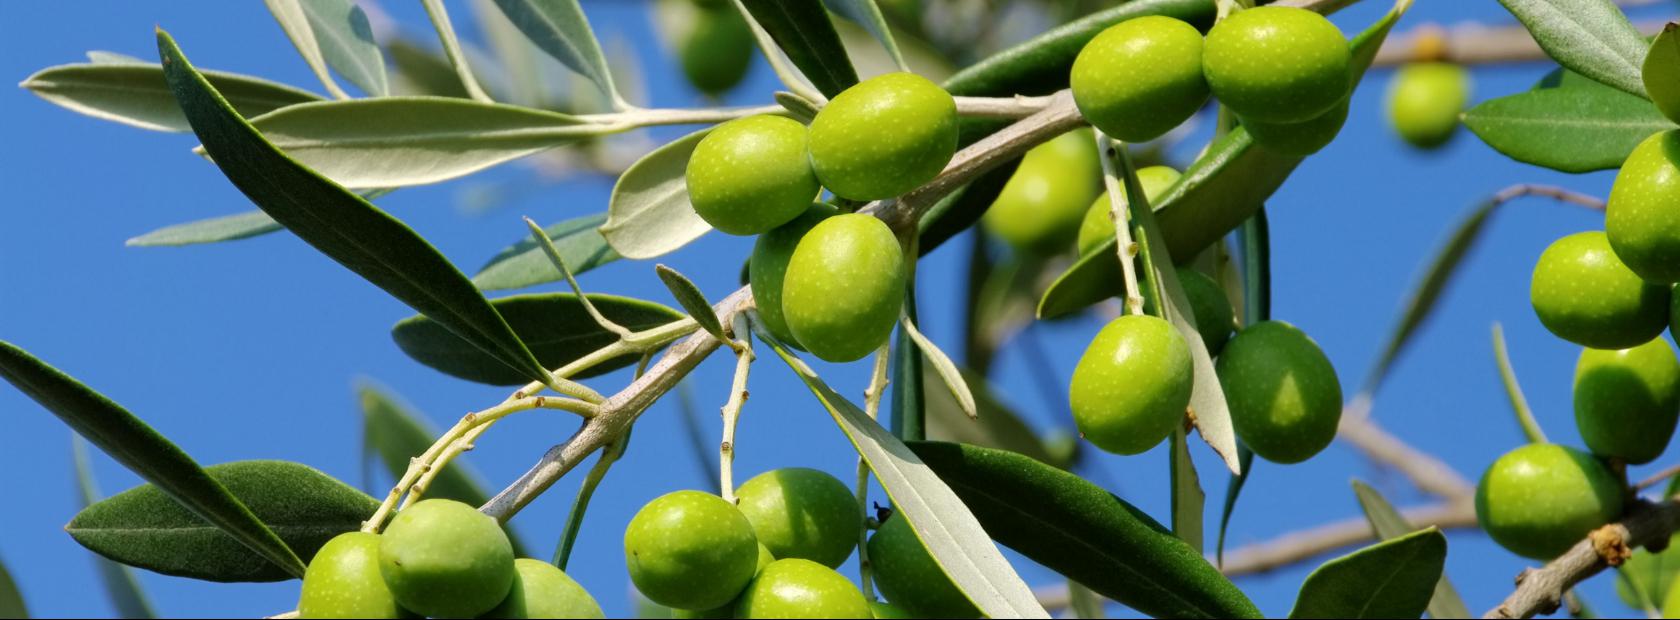 Raccolta delle Olive e visita al frantoio